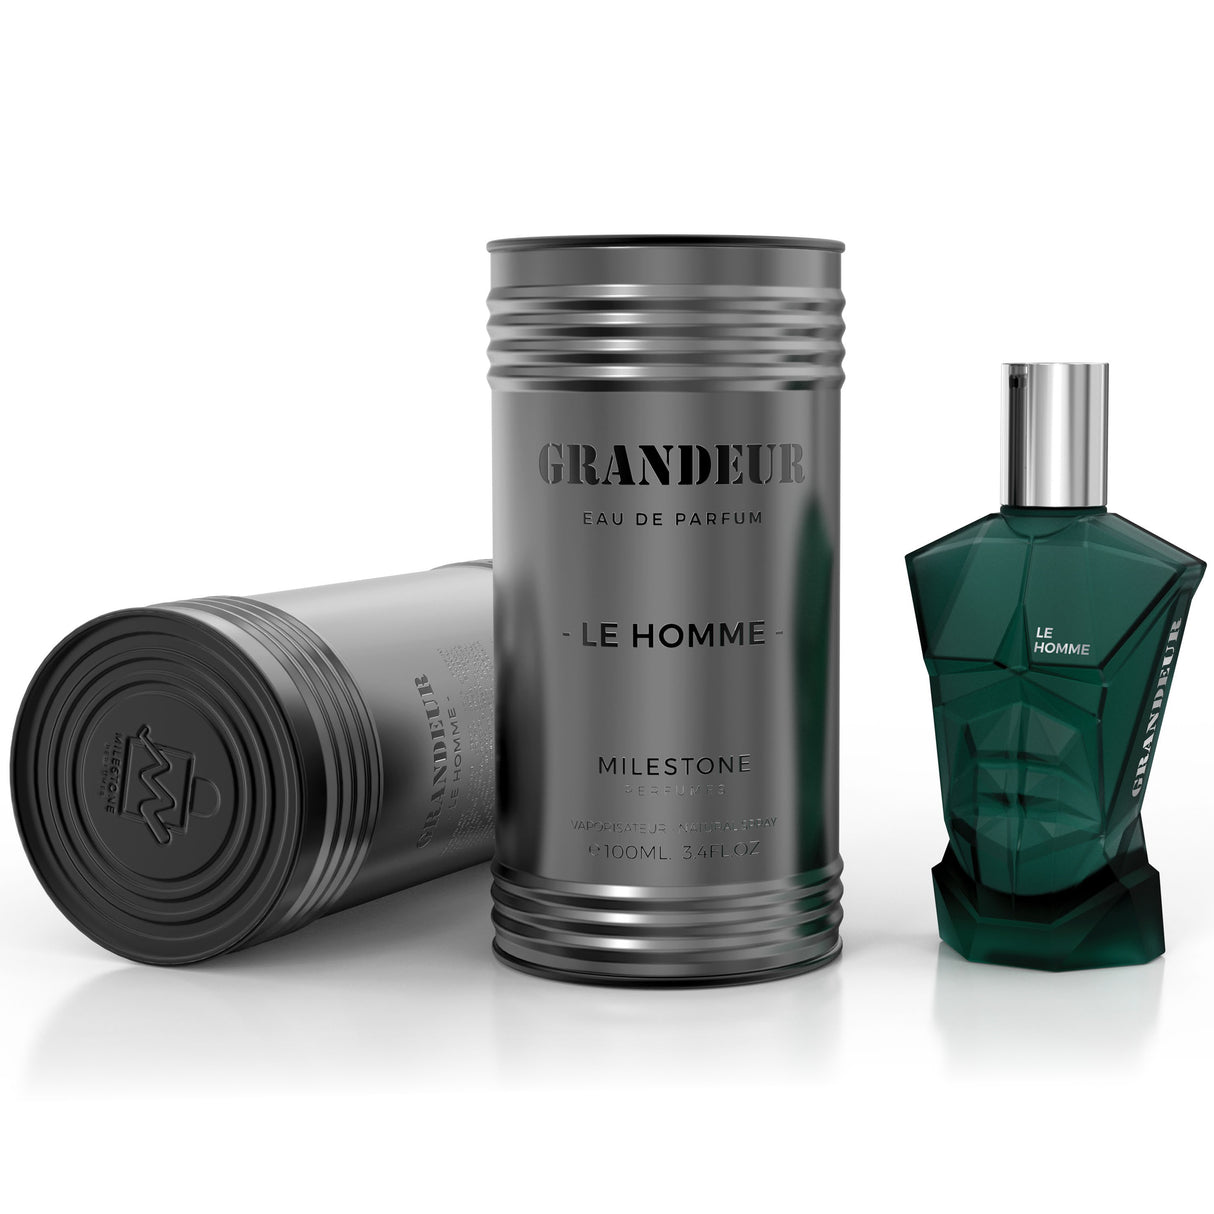 Grandeur Le Homme by Milestone Perfumes - Eau De Parfum for Man 3.4 Fl Oz / 100ML